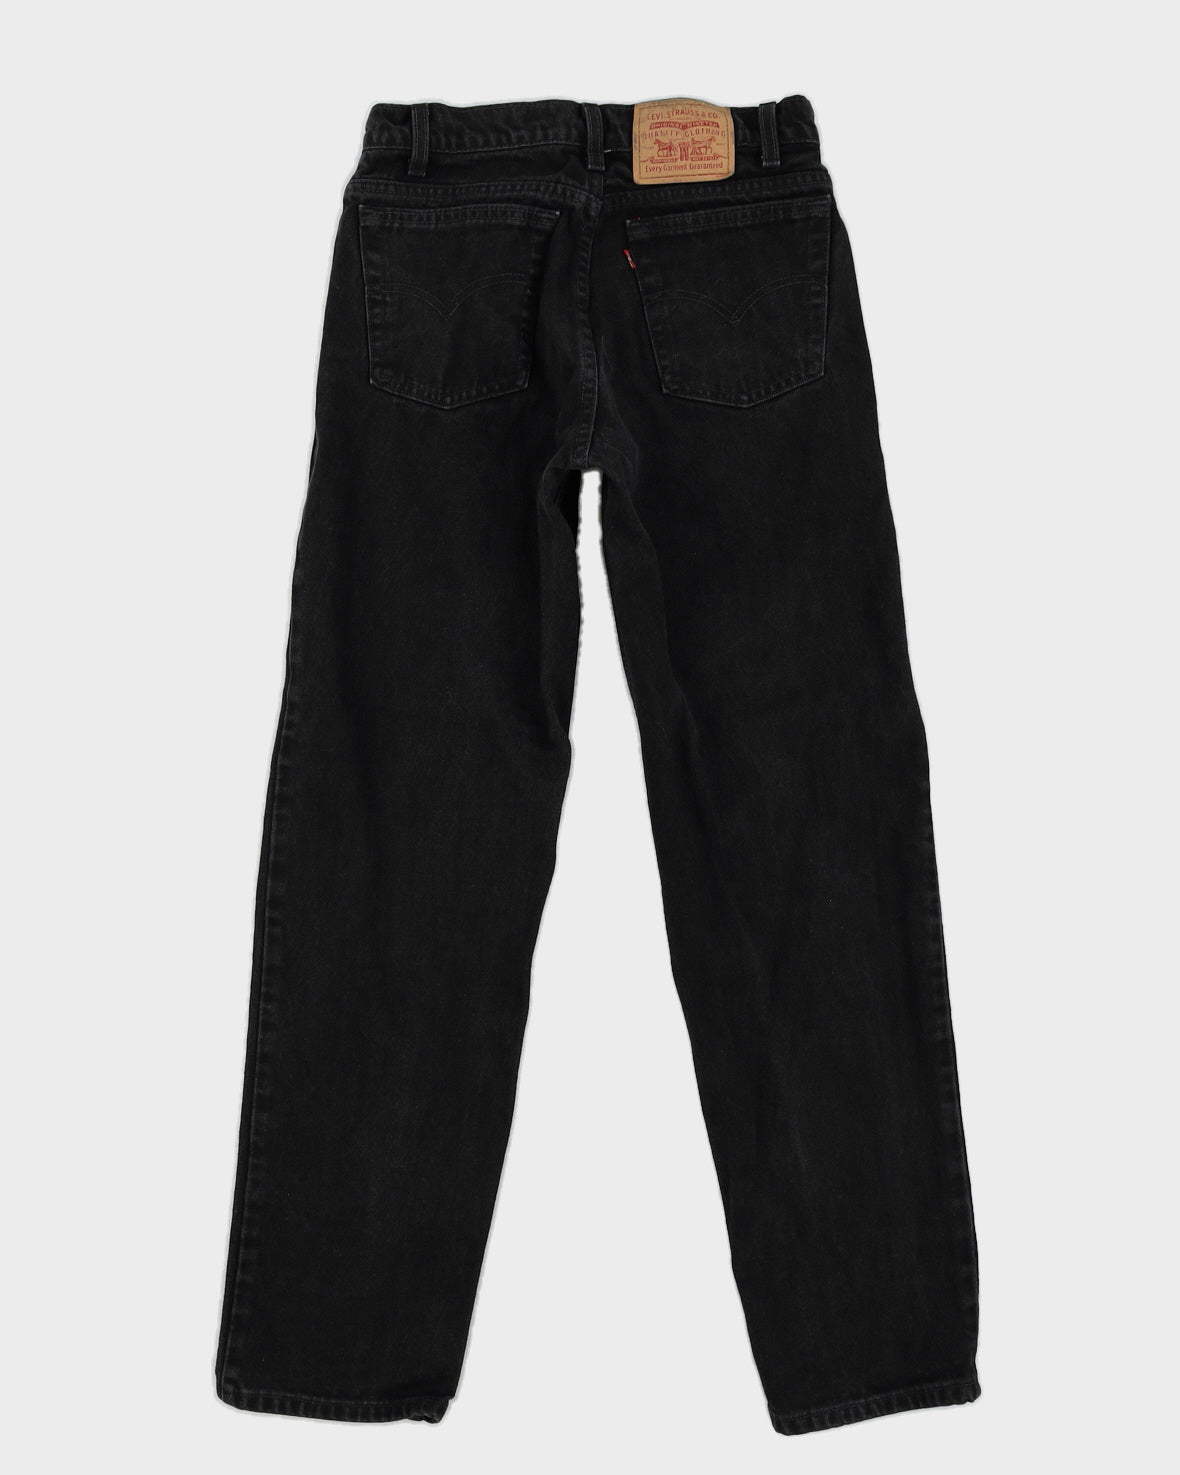 Vintage 80s Levi's Black Jeans - W30 L32